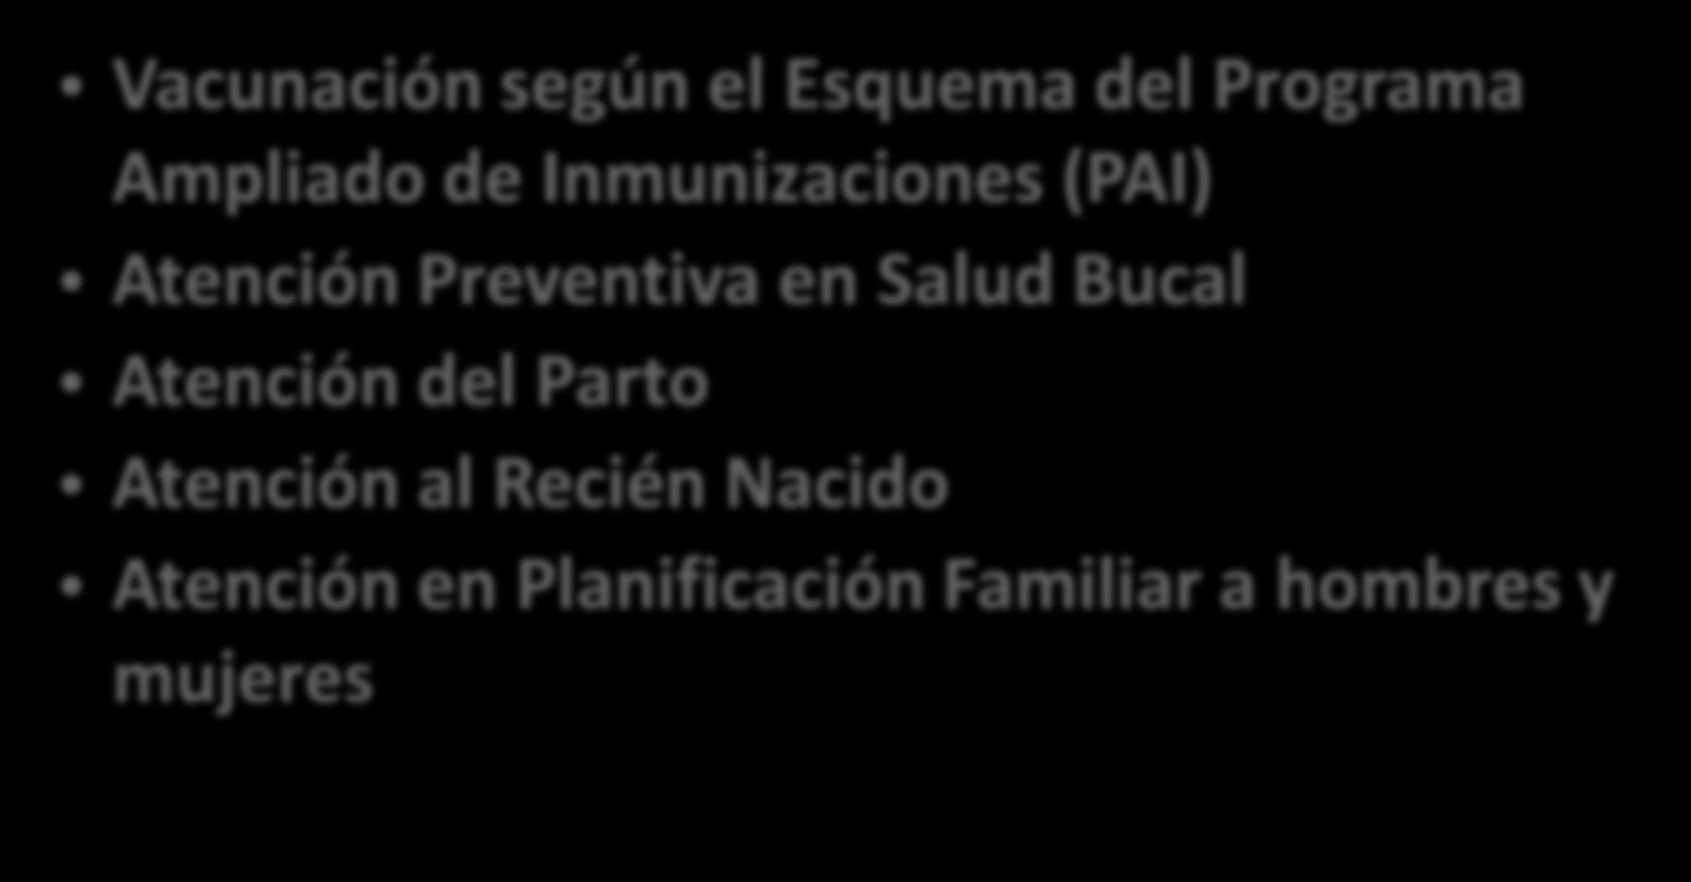 NORMAS TECNICAS PROTECCION ESPECIFICA Vacunación según el Esquema del Programa Ampliado de Inmunizaciones (PAI) Atención